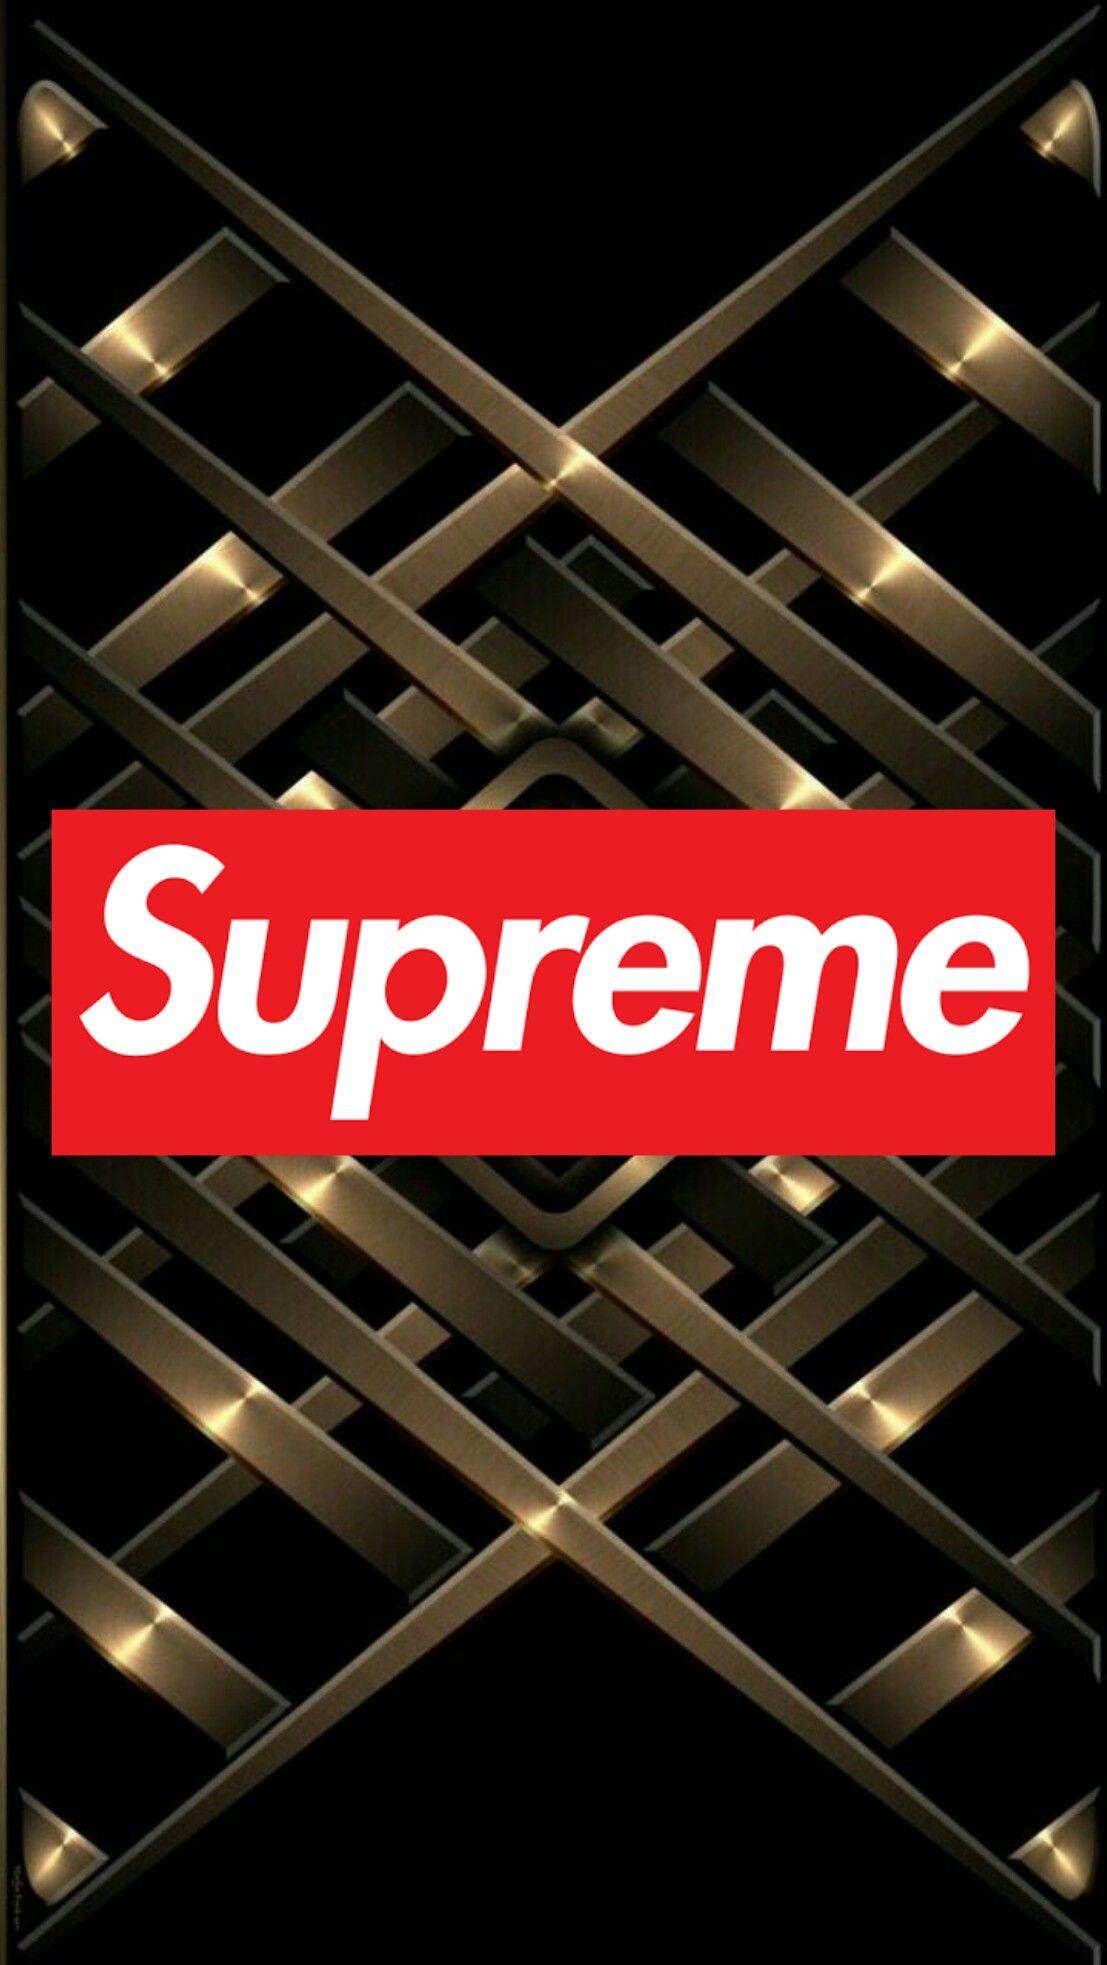 Supreme gold